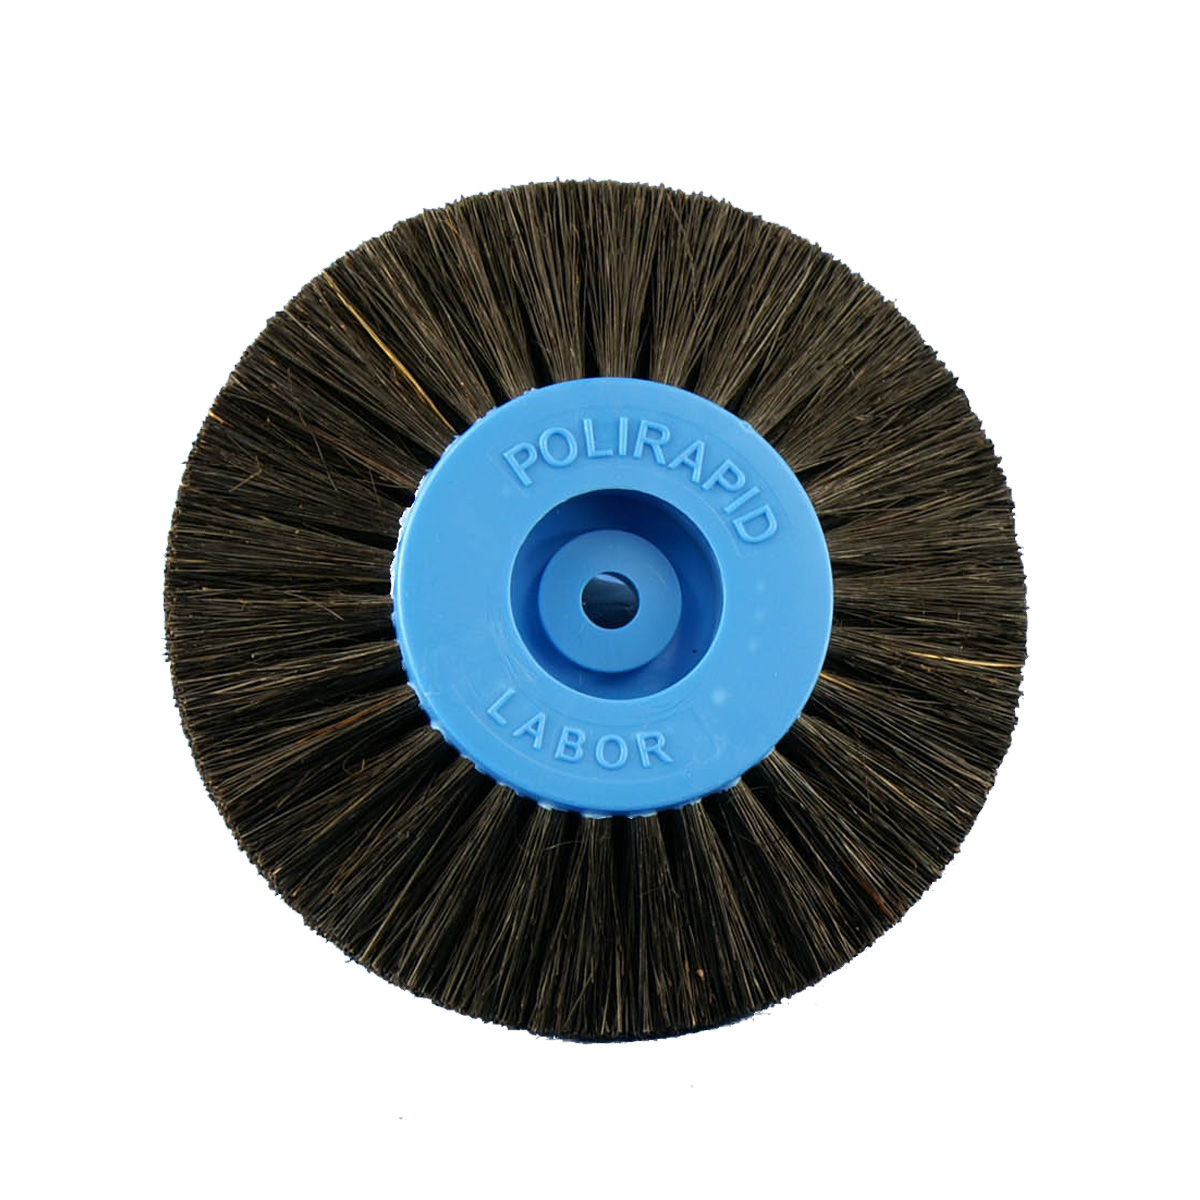 Ronde borstel, zwarte Chungking haren, 4-rijig, puntig, Ø 80 mm, met kunststof kern, blauw